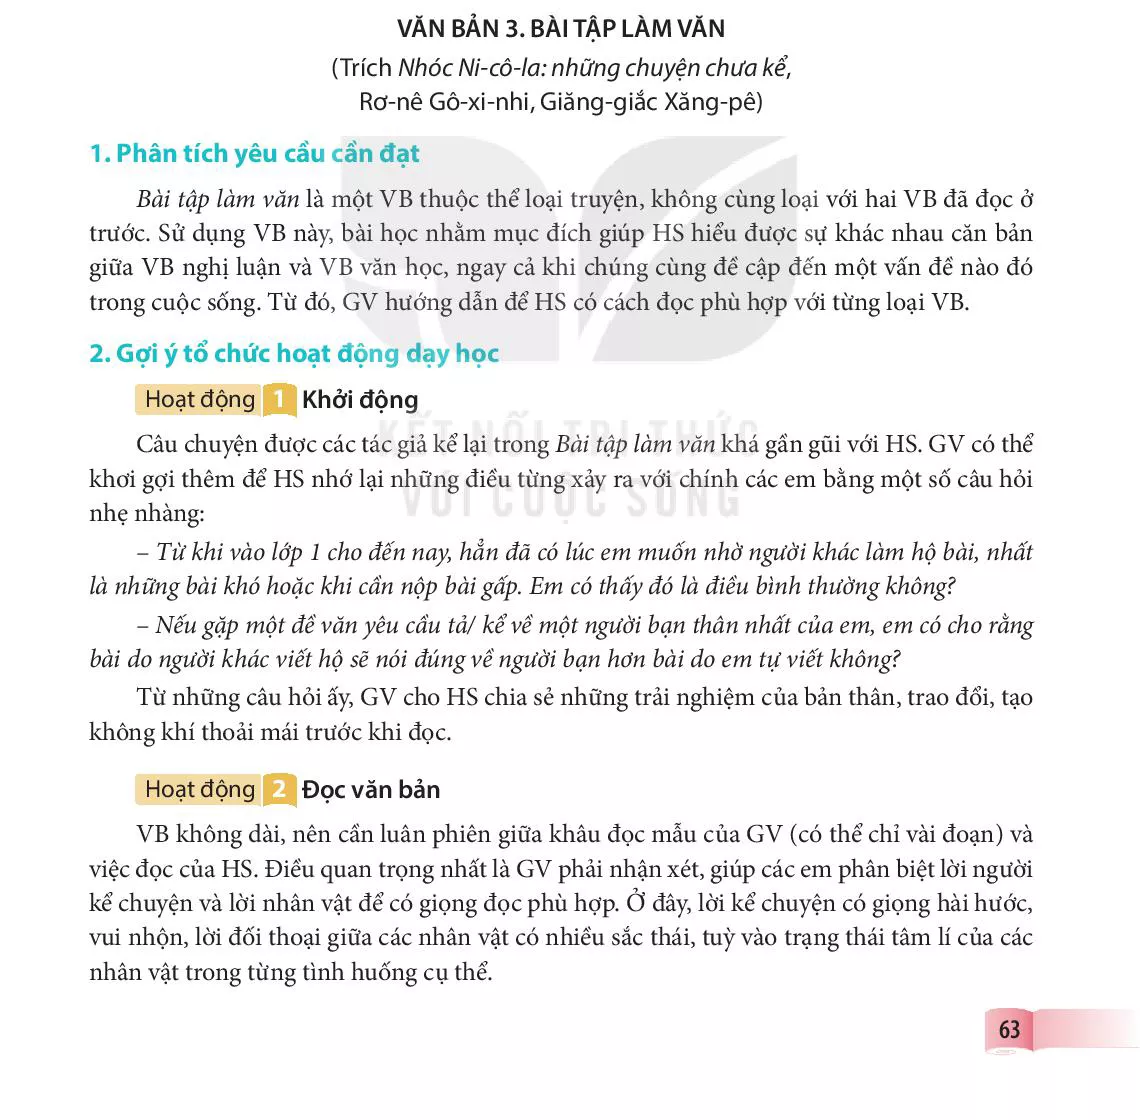 VB 3. Bài tập làm văn (trích Nhóc Ni-CÔ-la: những chuyện chưa kể, Rơ-nê Gô-xi-nhi và Giăng-giắc Xăng-pe)